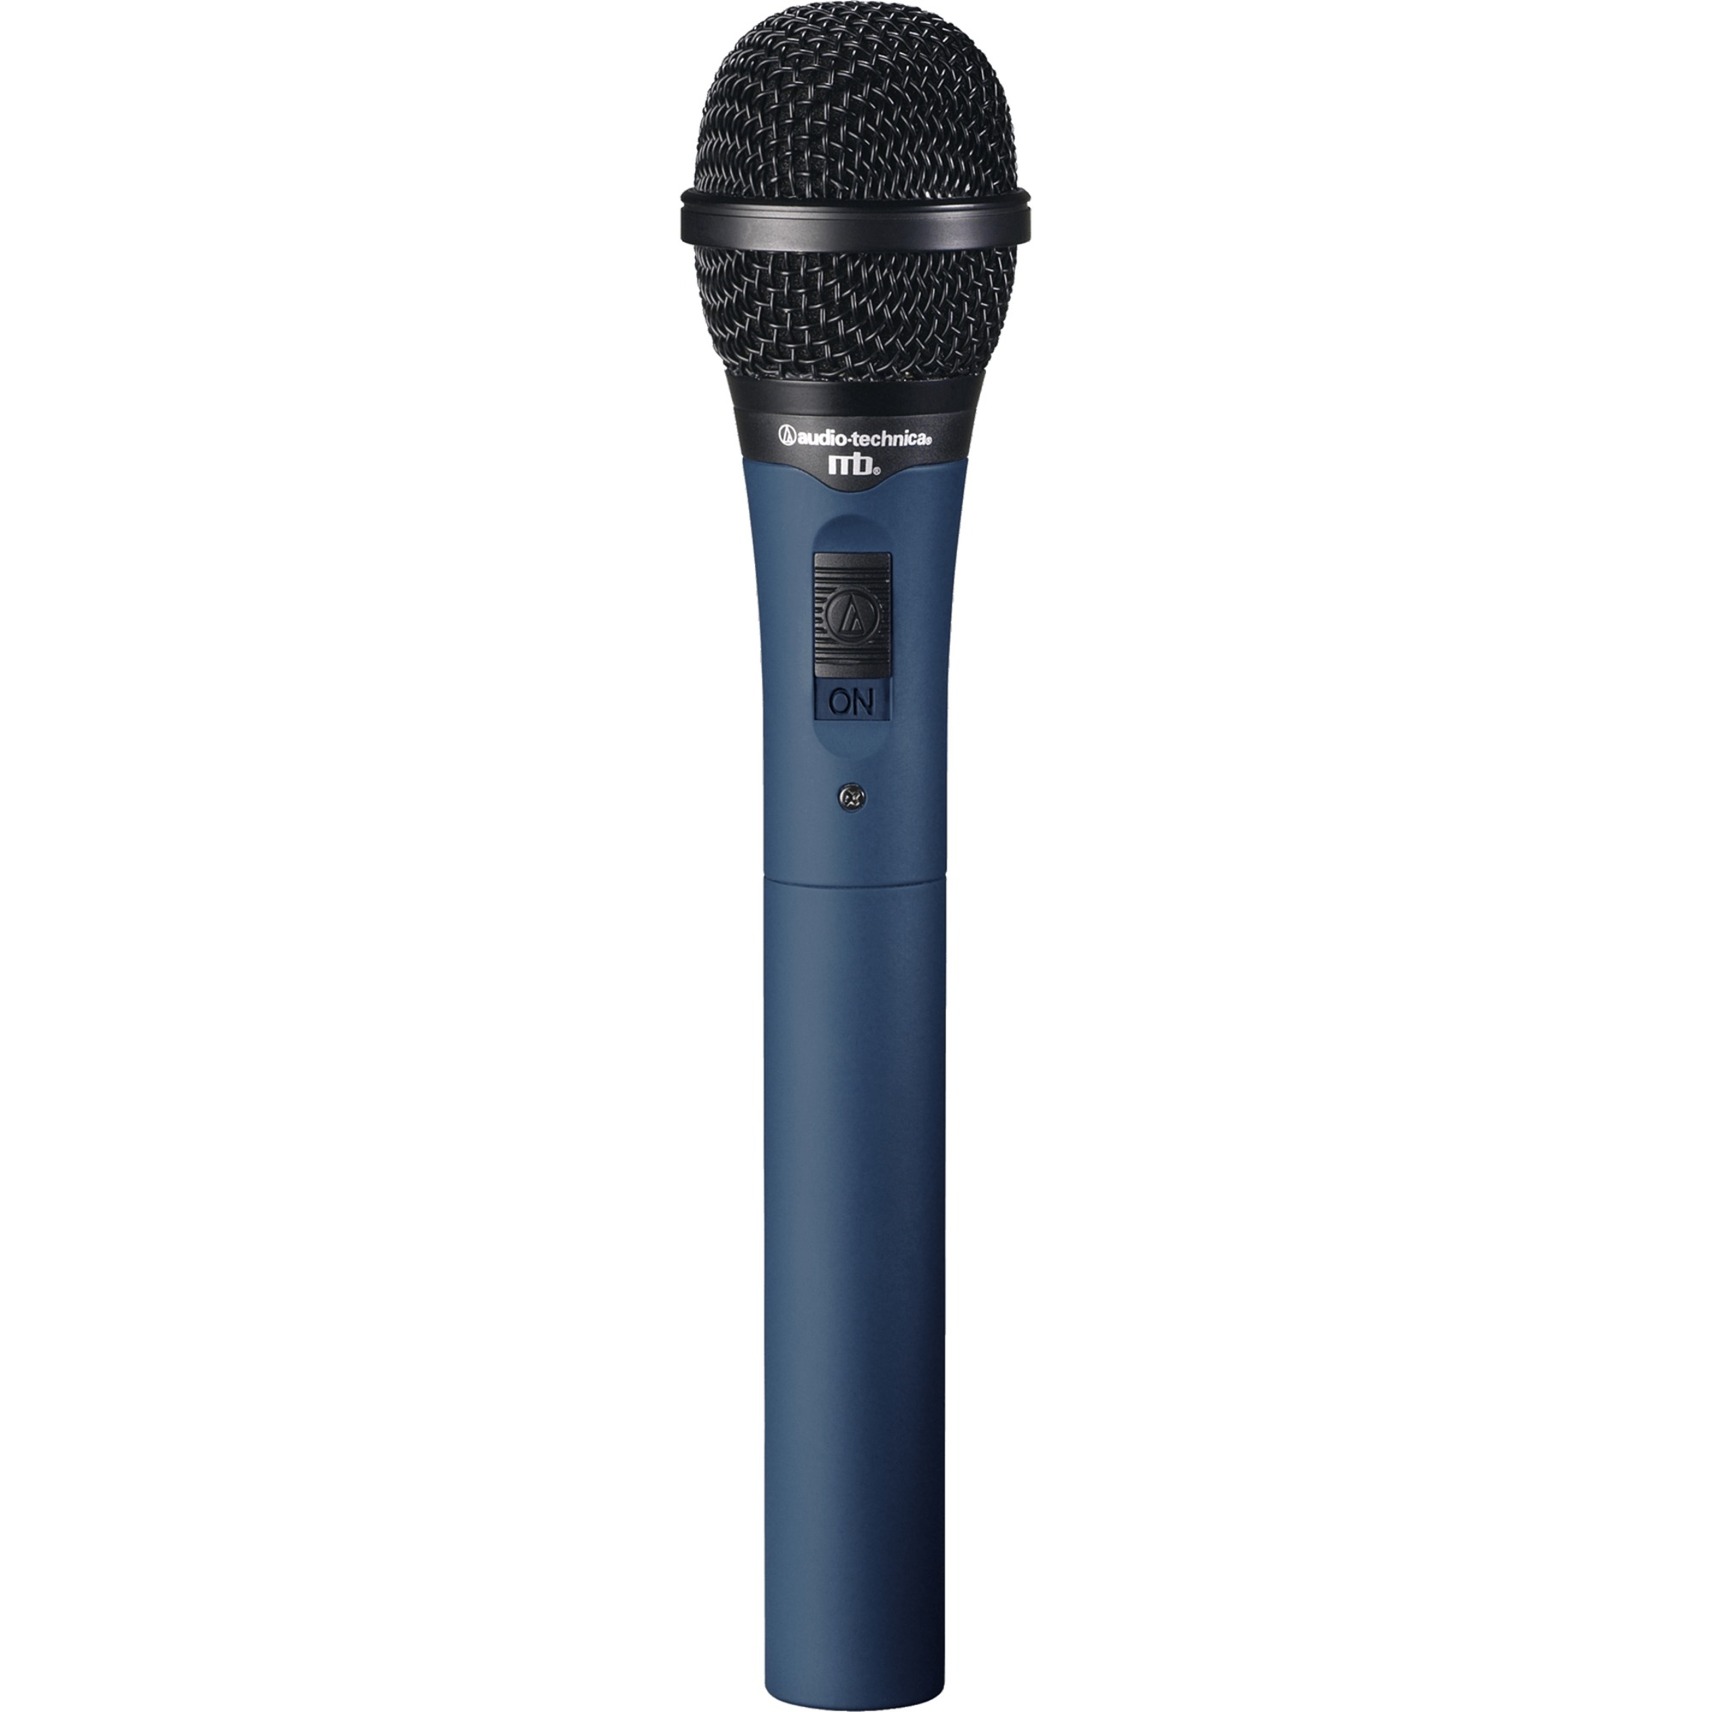 Image of Alternate - MB4K, Mikrofon online einkaufen bei Alternate